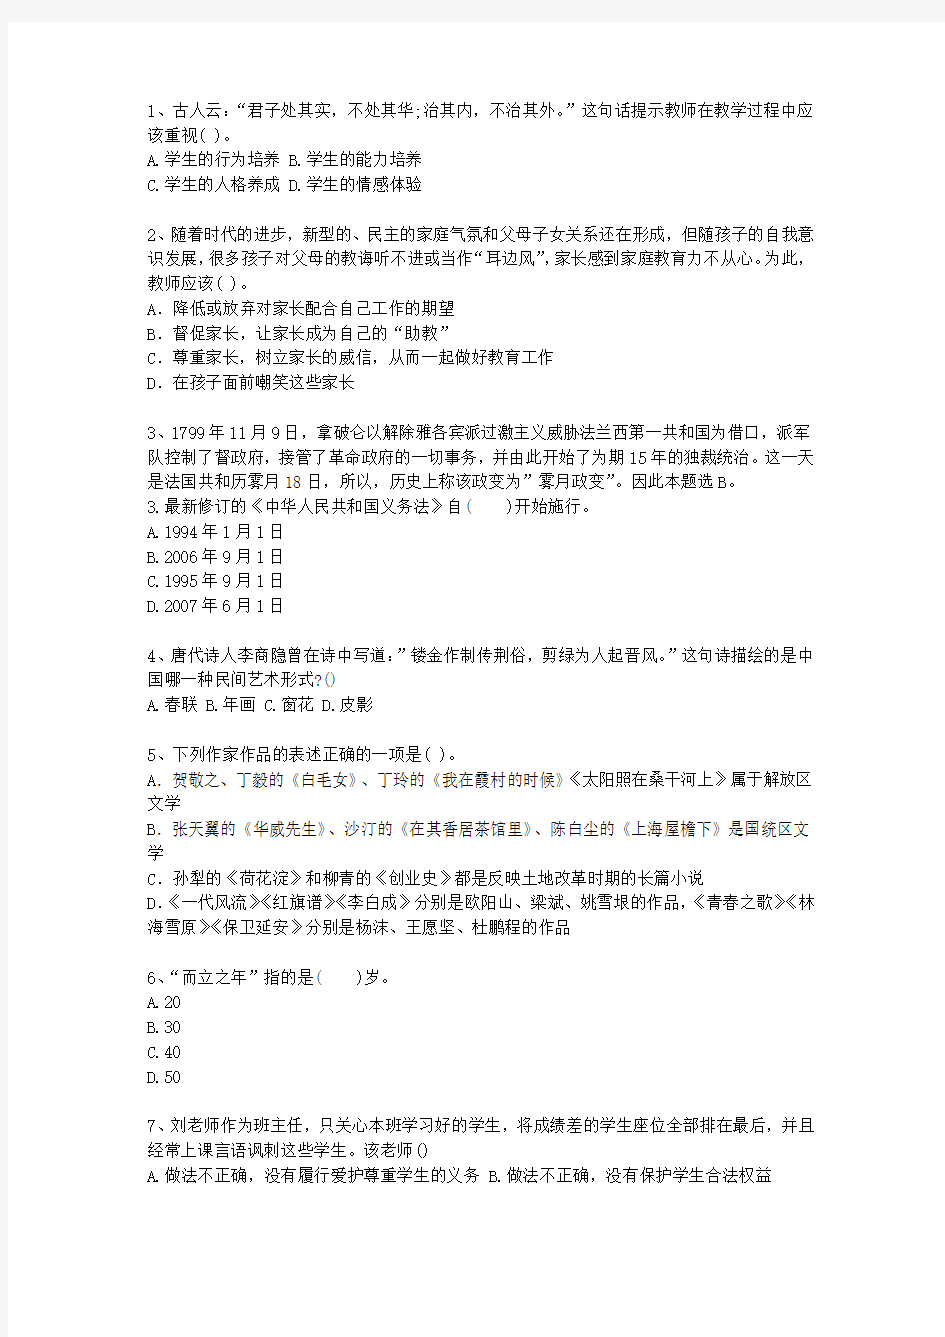 2013云南省教师资格证考试《综合素质》考资料